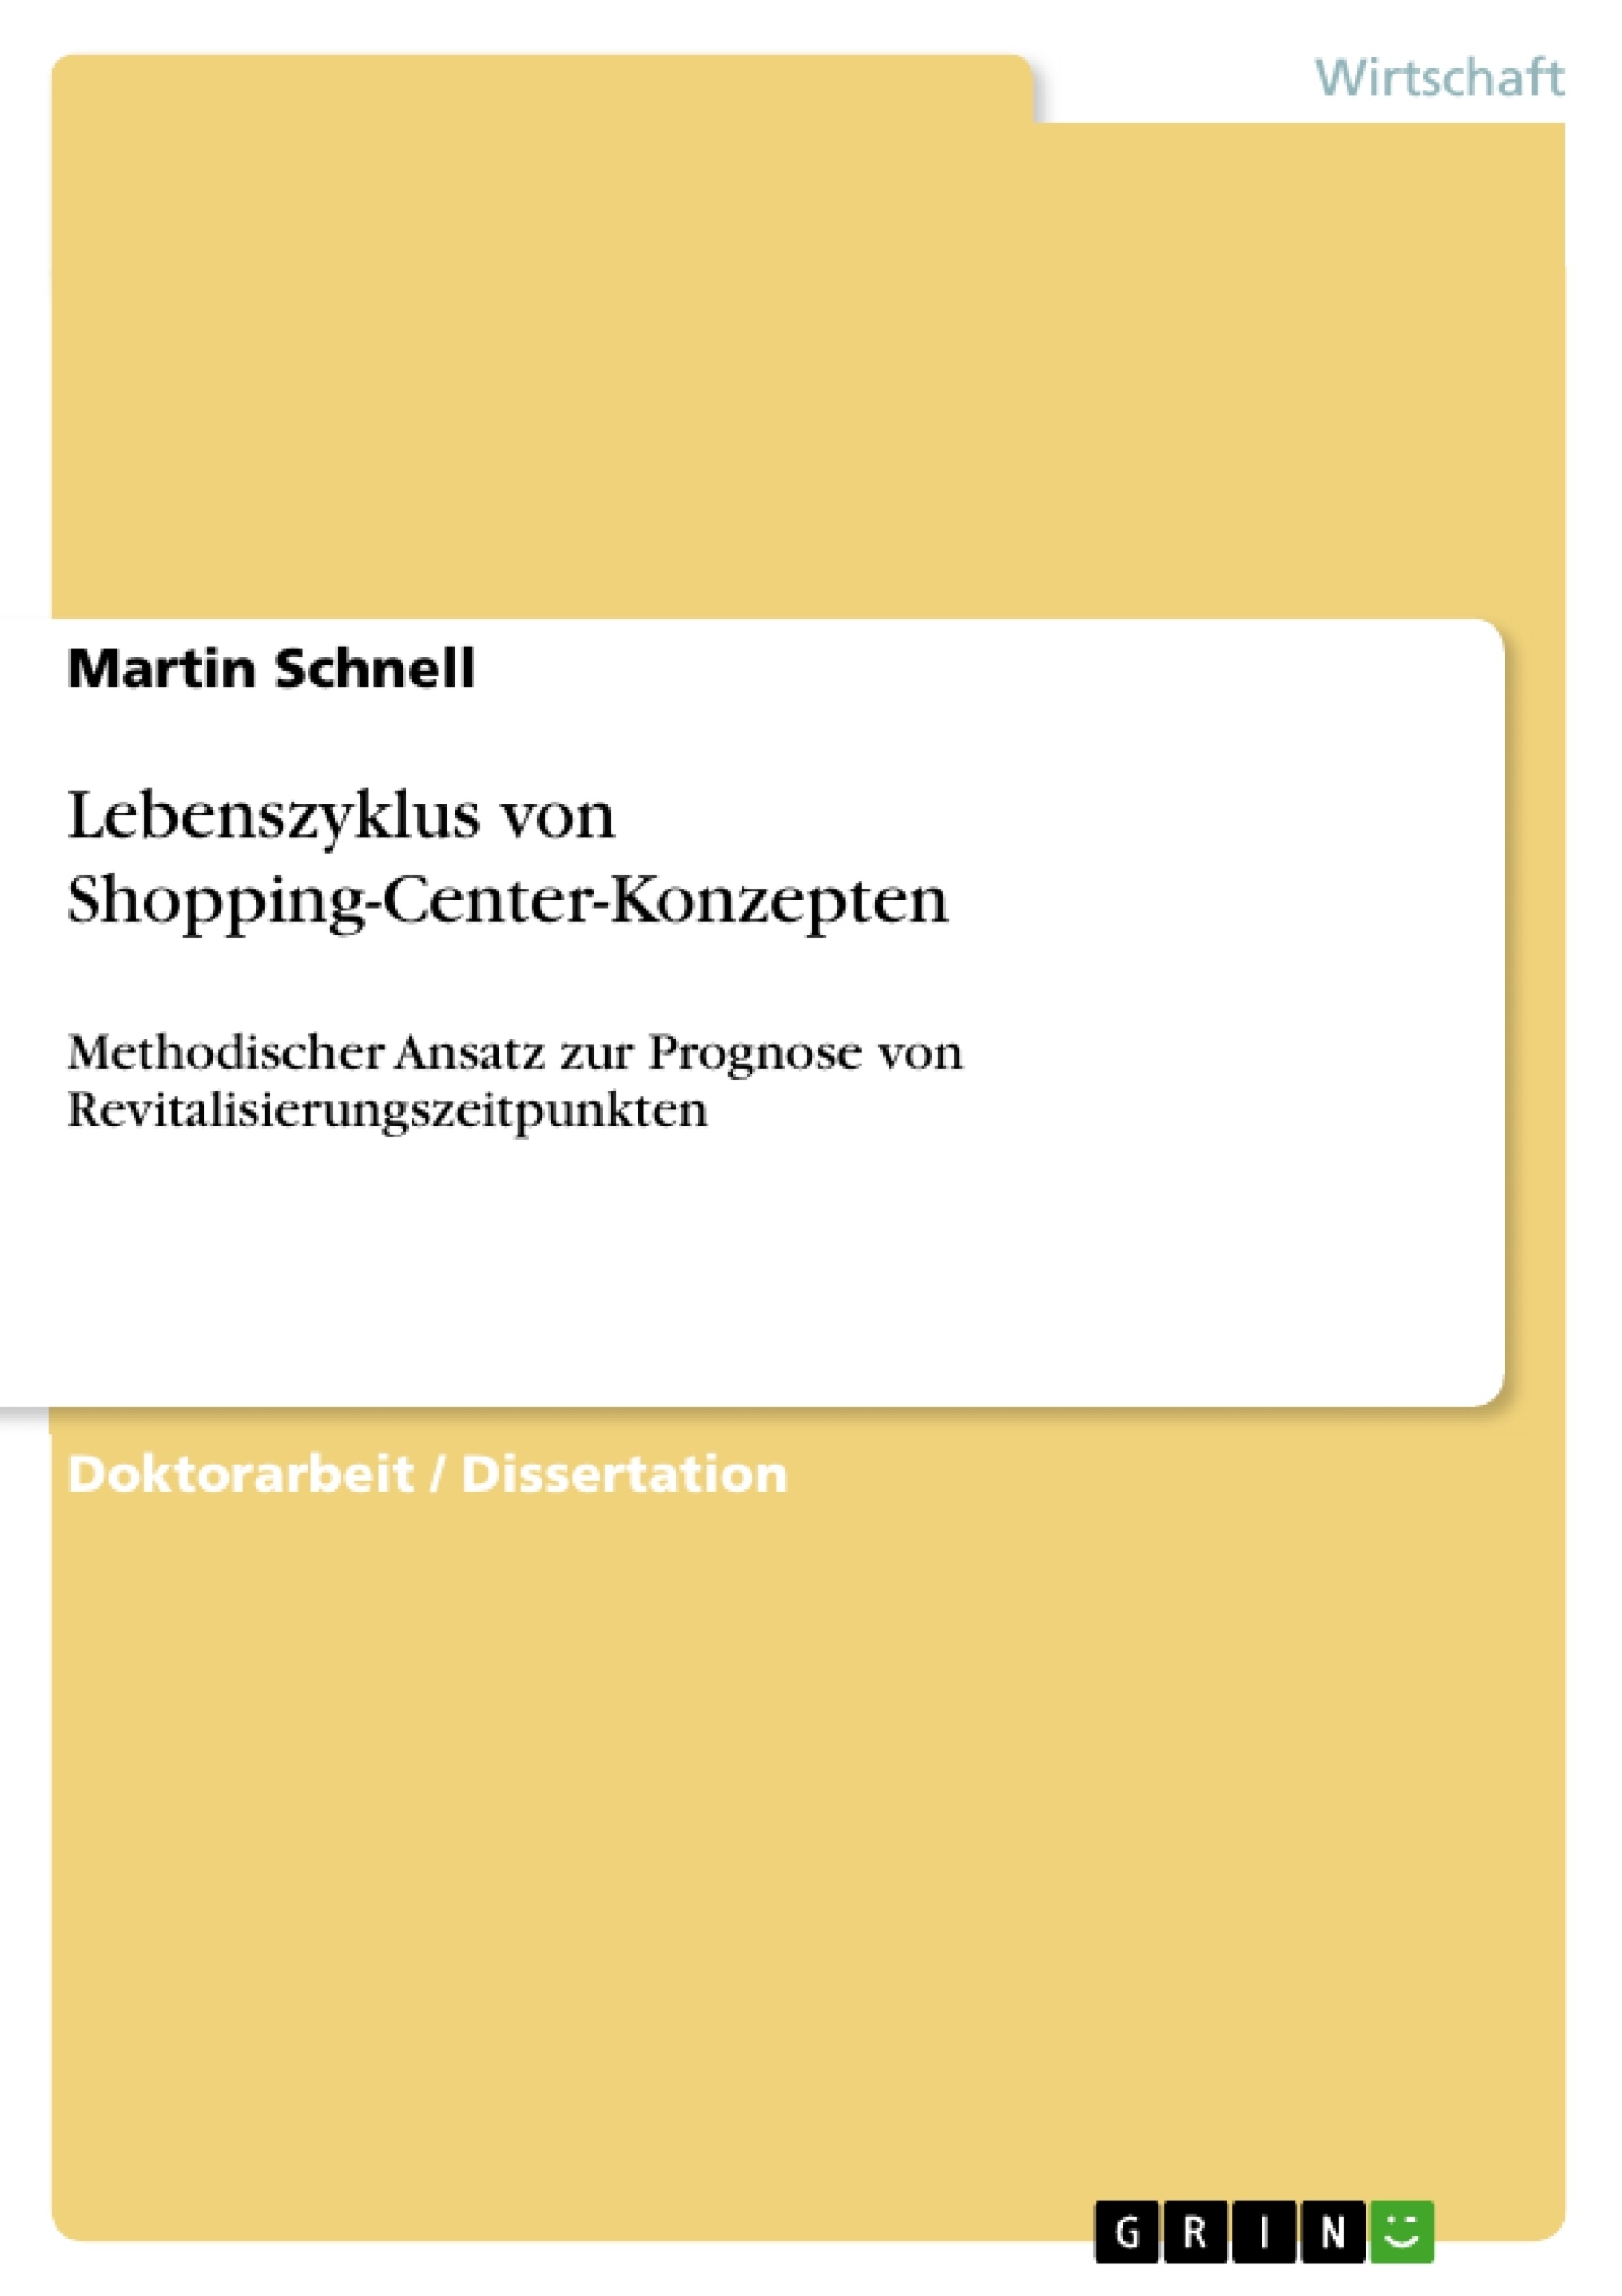 Titre: Lebenszyklus von Shopping-Center-Konzepten